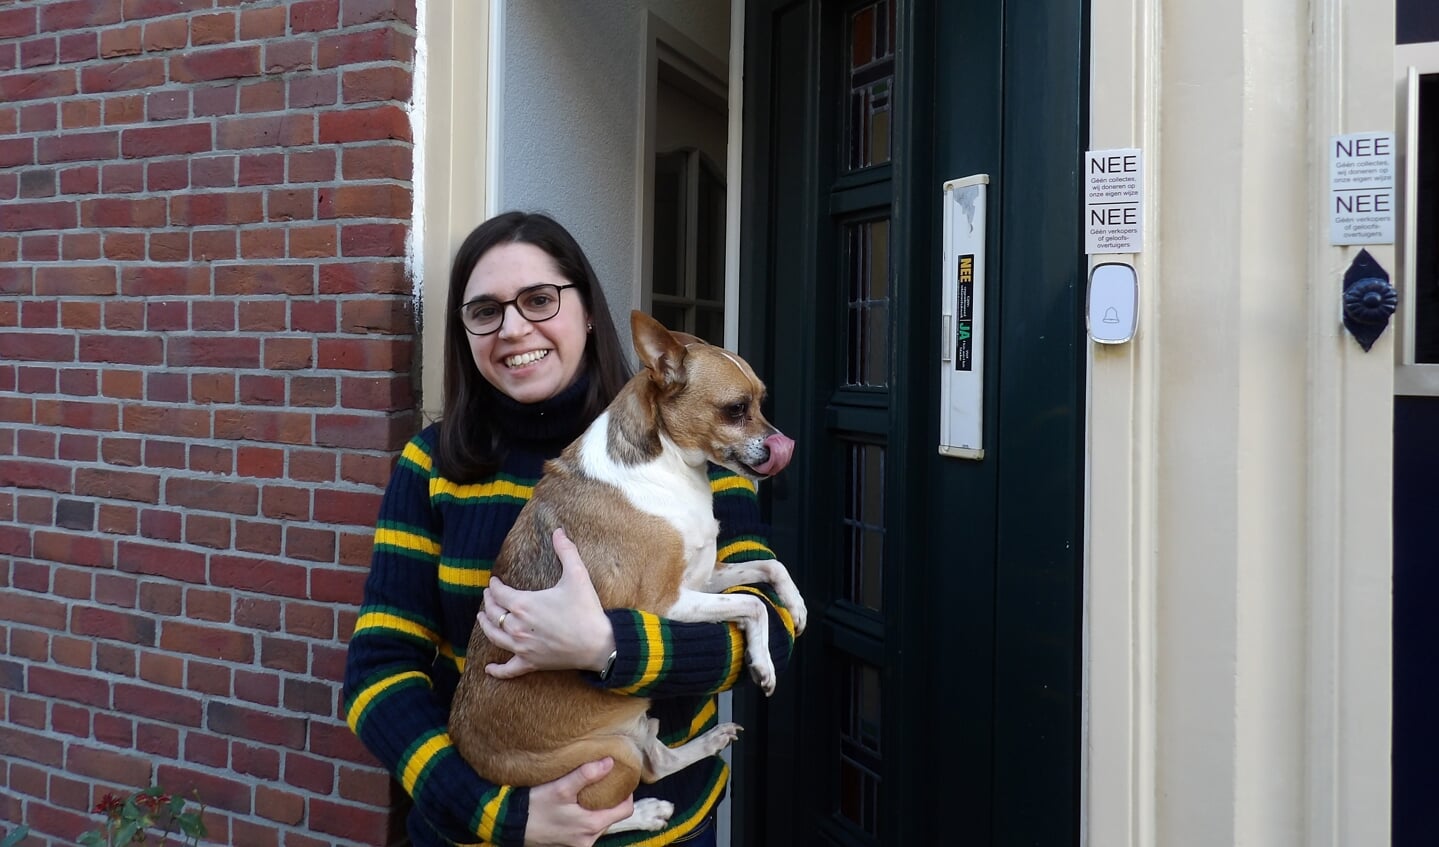 Patricia, met hondje Zeus, is helemaal ingeburgerd in de Koepoortstraat